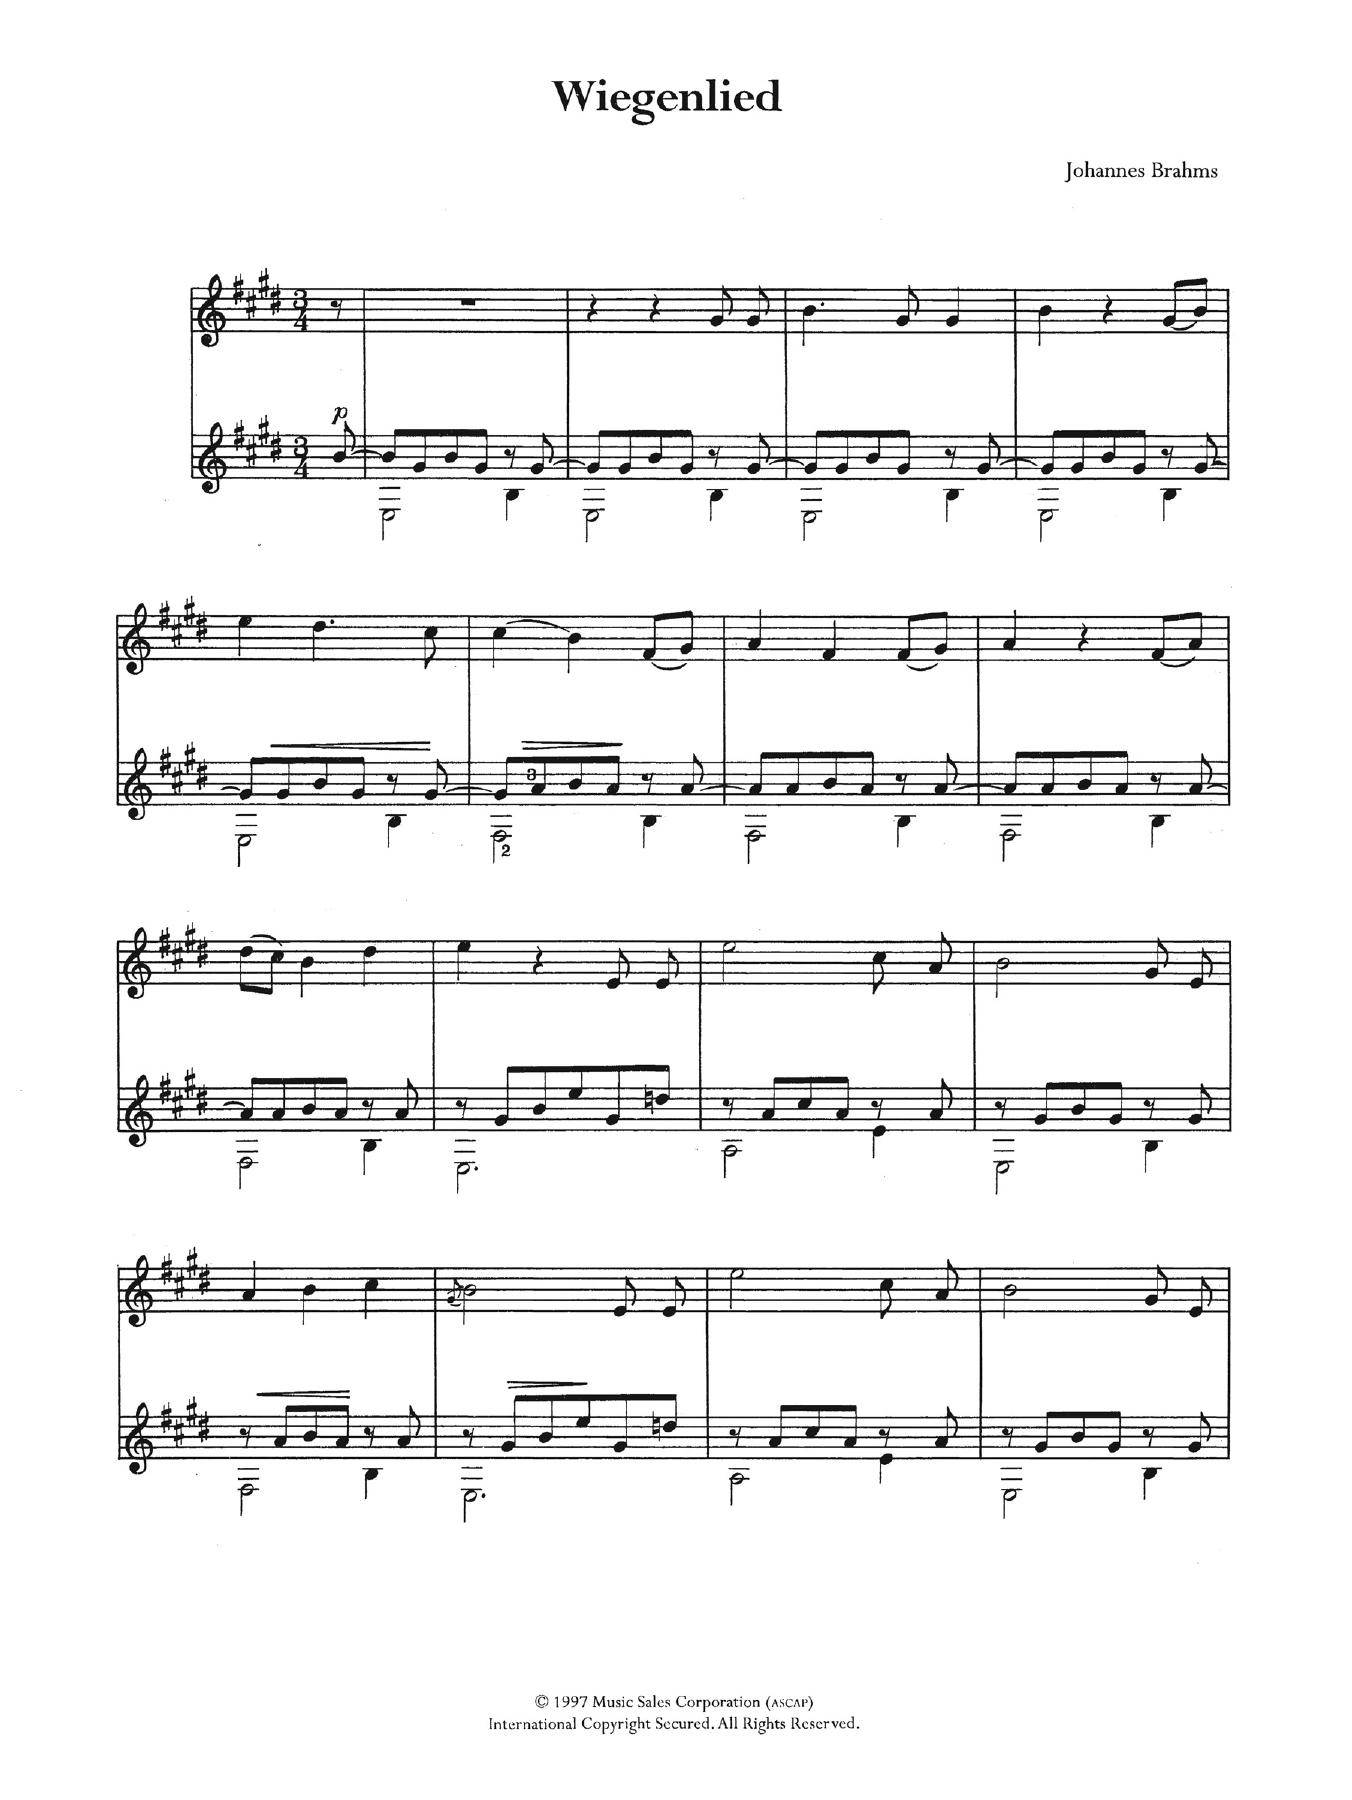 Download Johannes Brahms Wiegenlied (Lullaby) Sheet Music